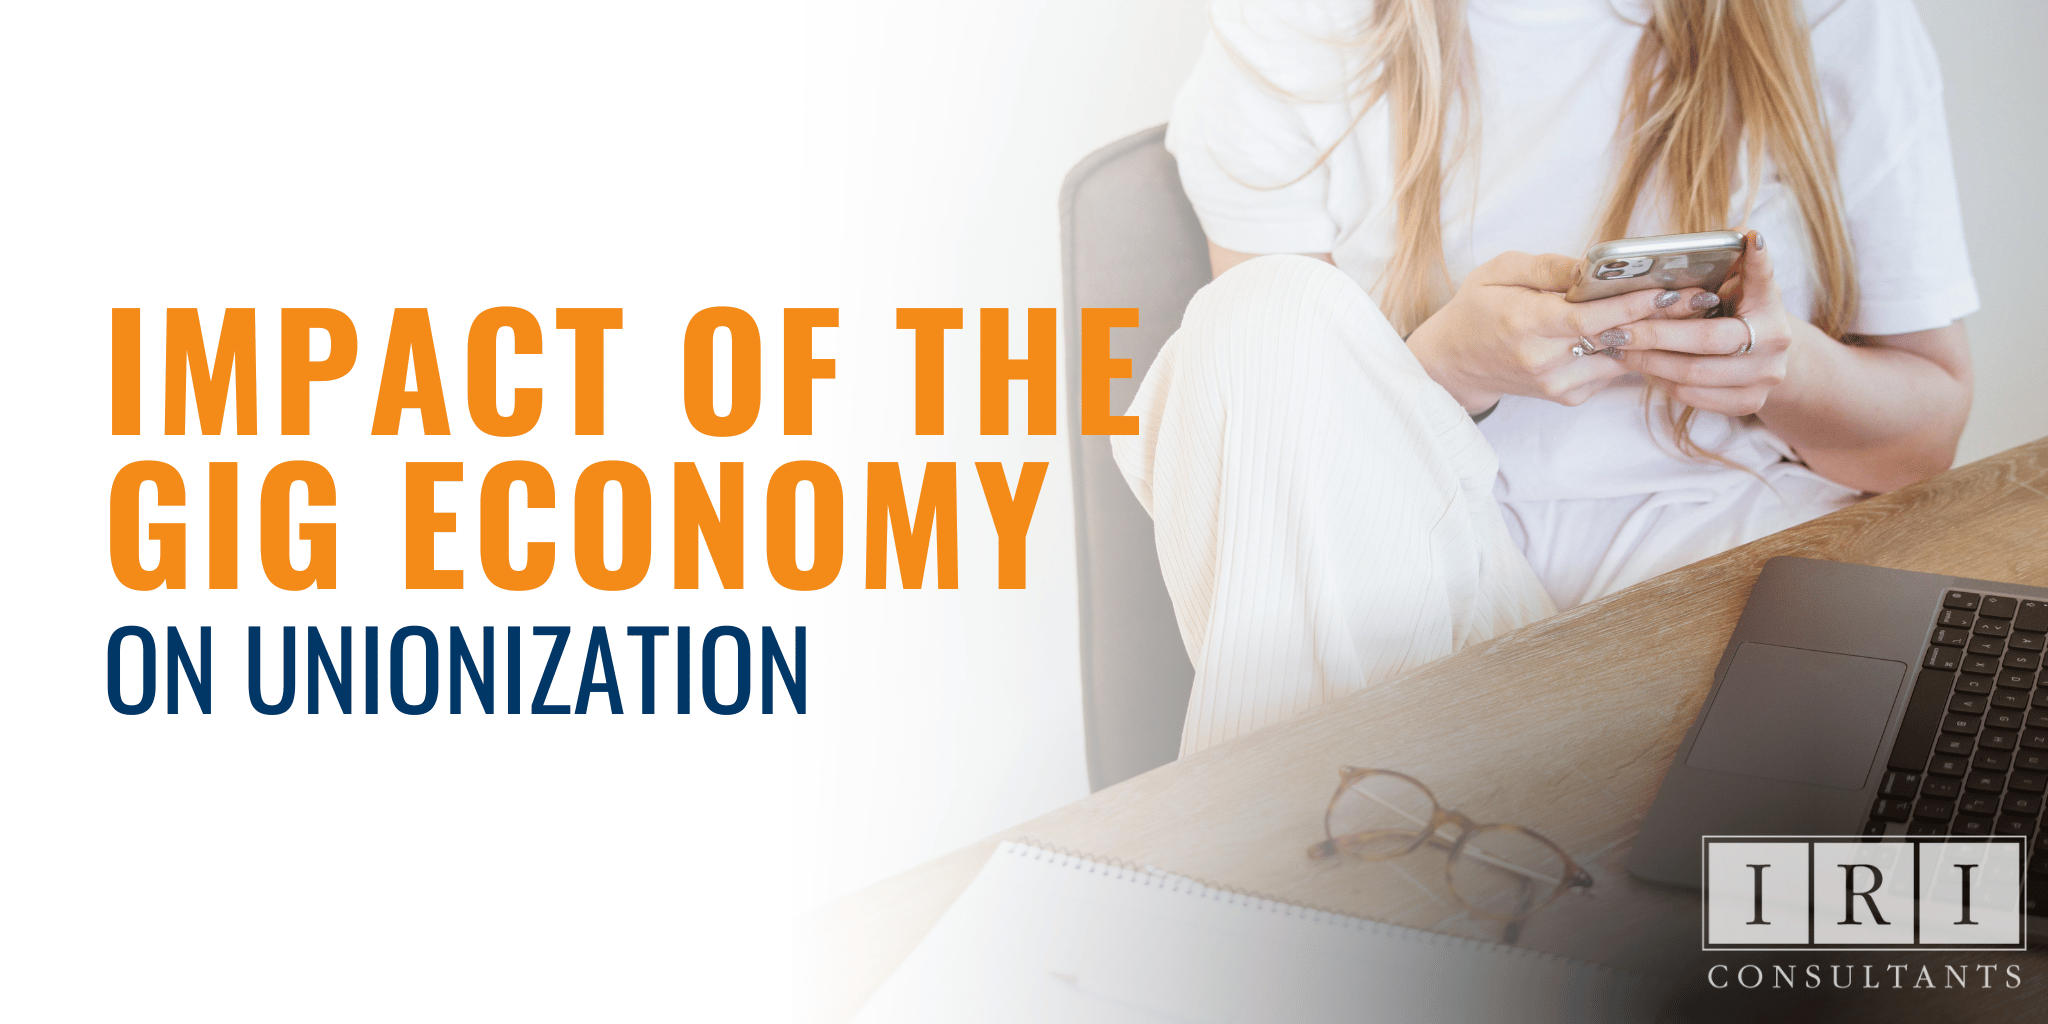 The Impact of the Gig Economy on Unionization